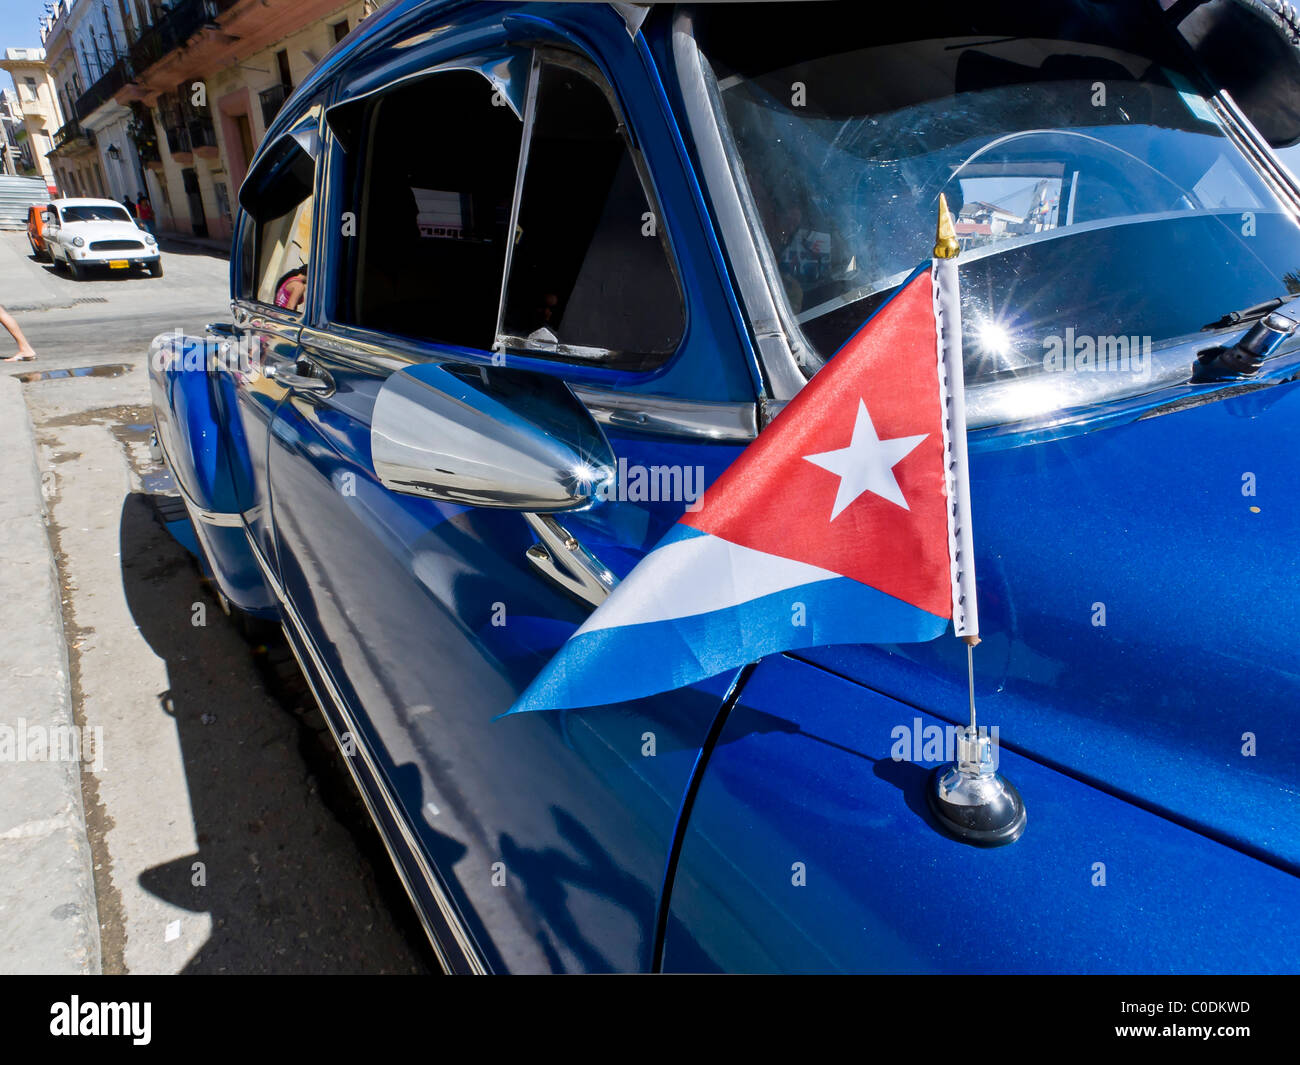 Dettaglio di Classic American Cars Old Havana Cuba bandiera cubana specchietto laterale Foto Stock